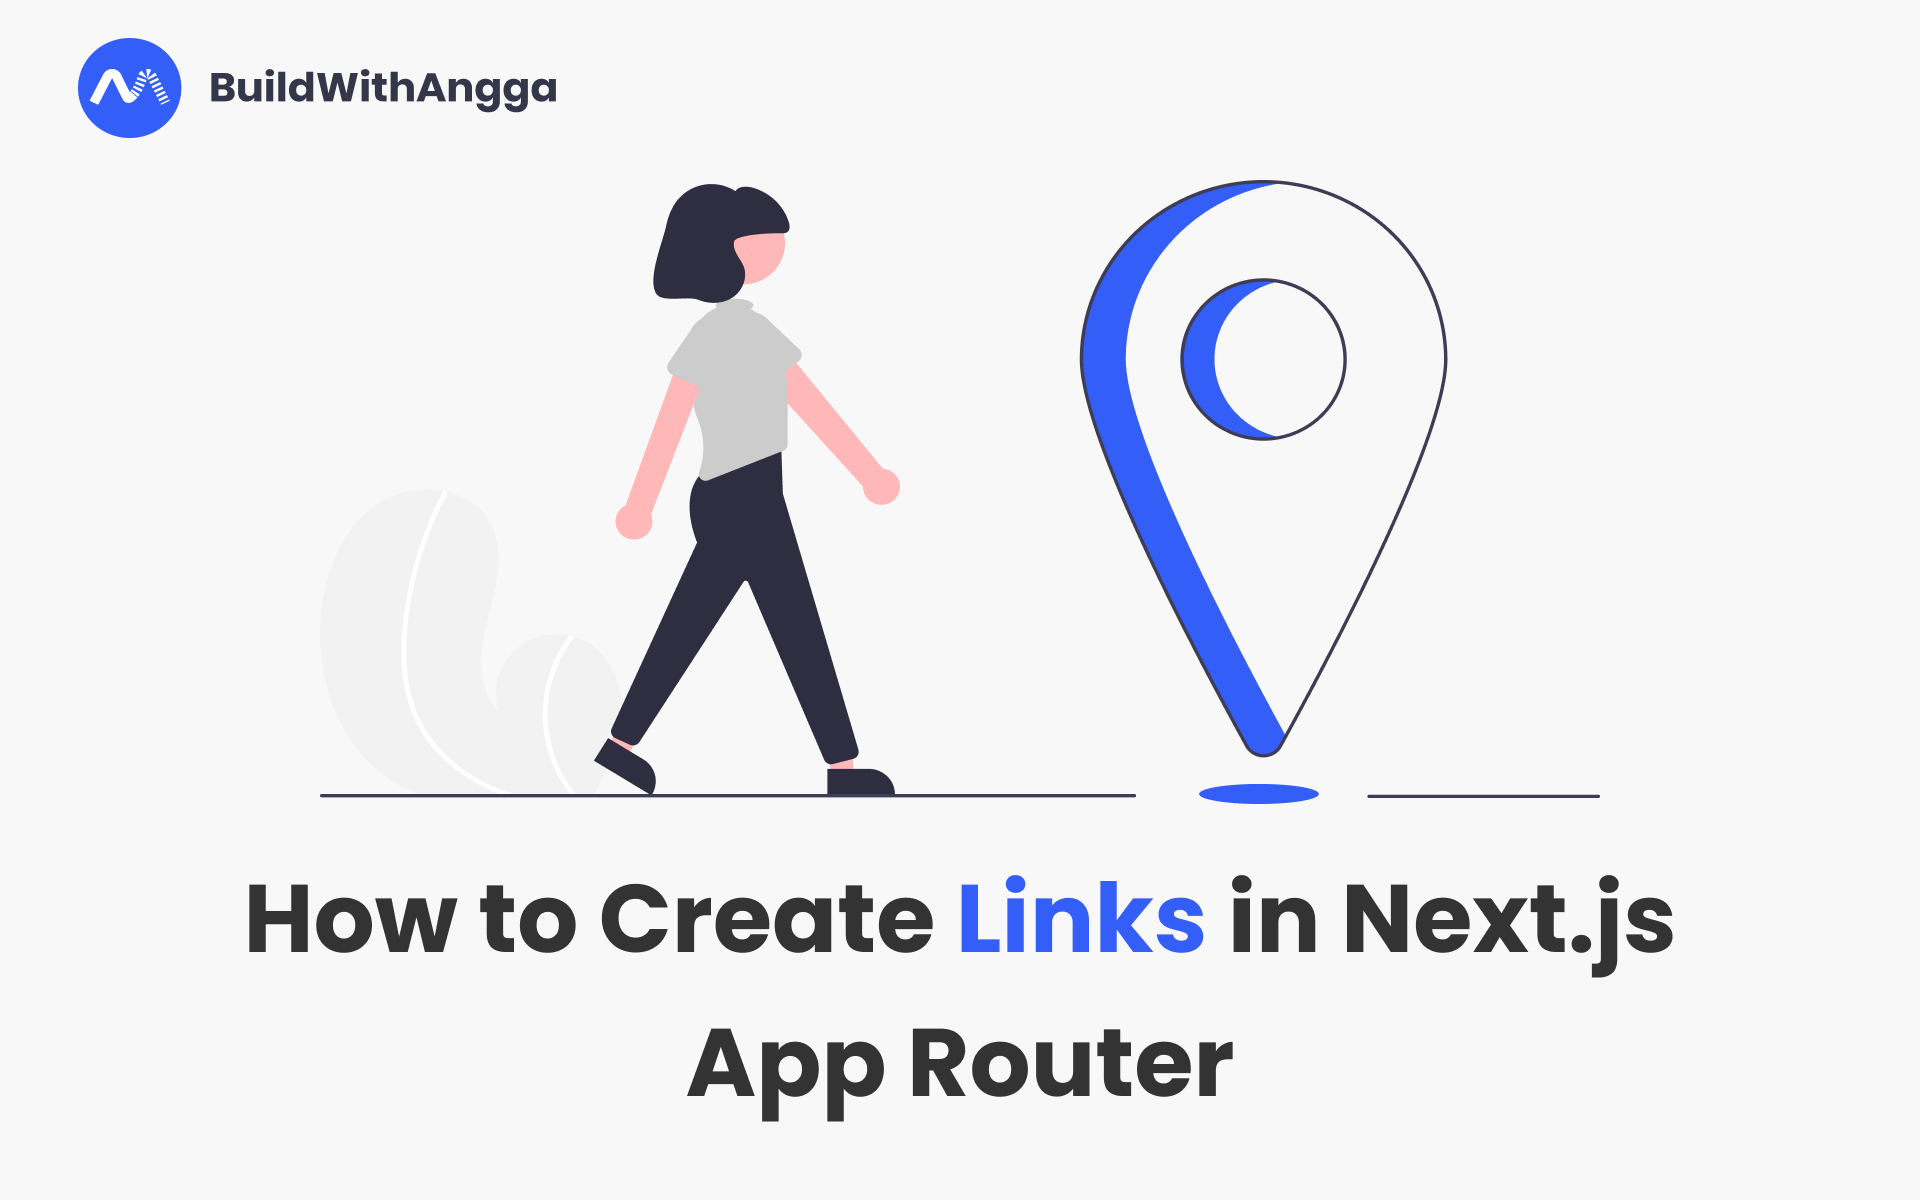 Kelas Cara Membuat Link di Next.js App Router di BuildWithAngga